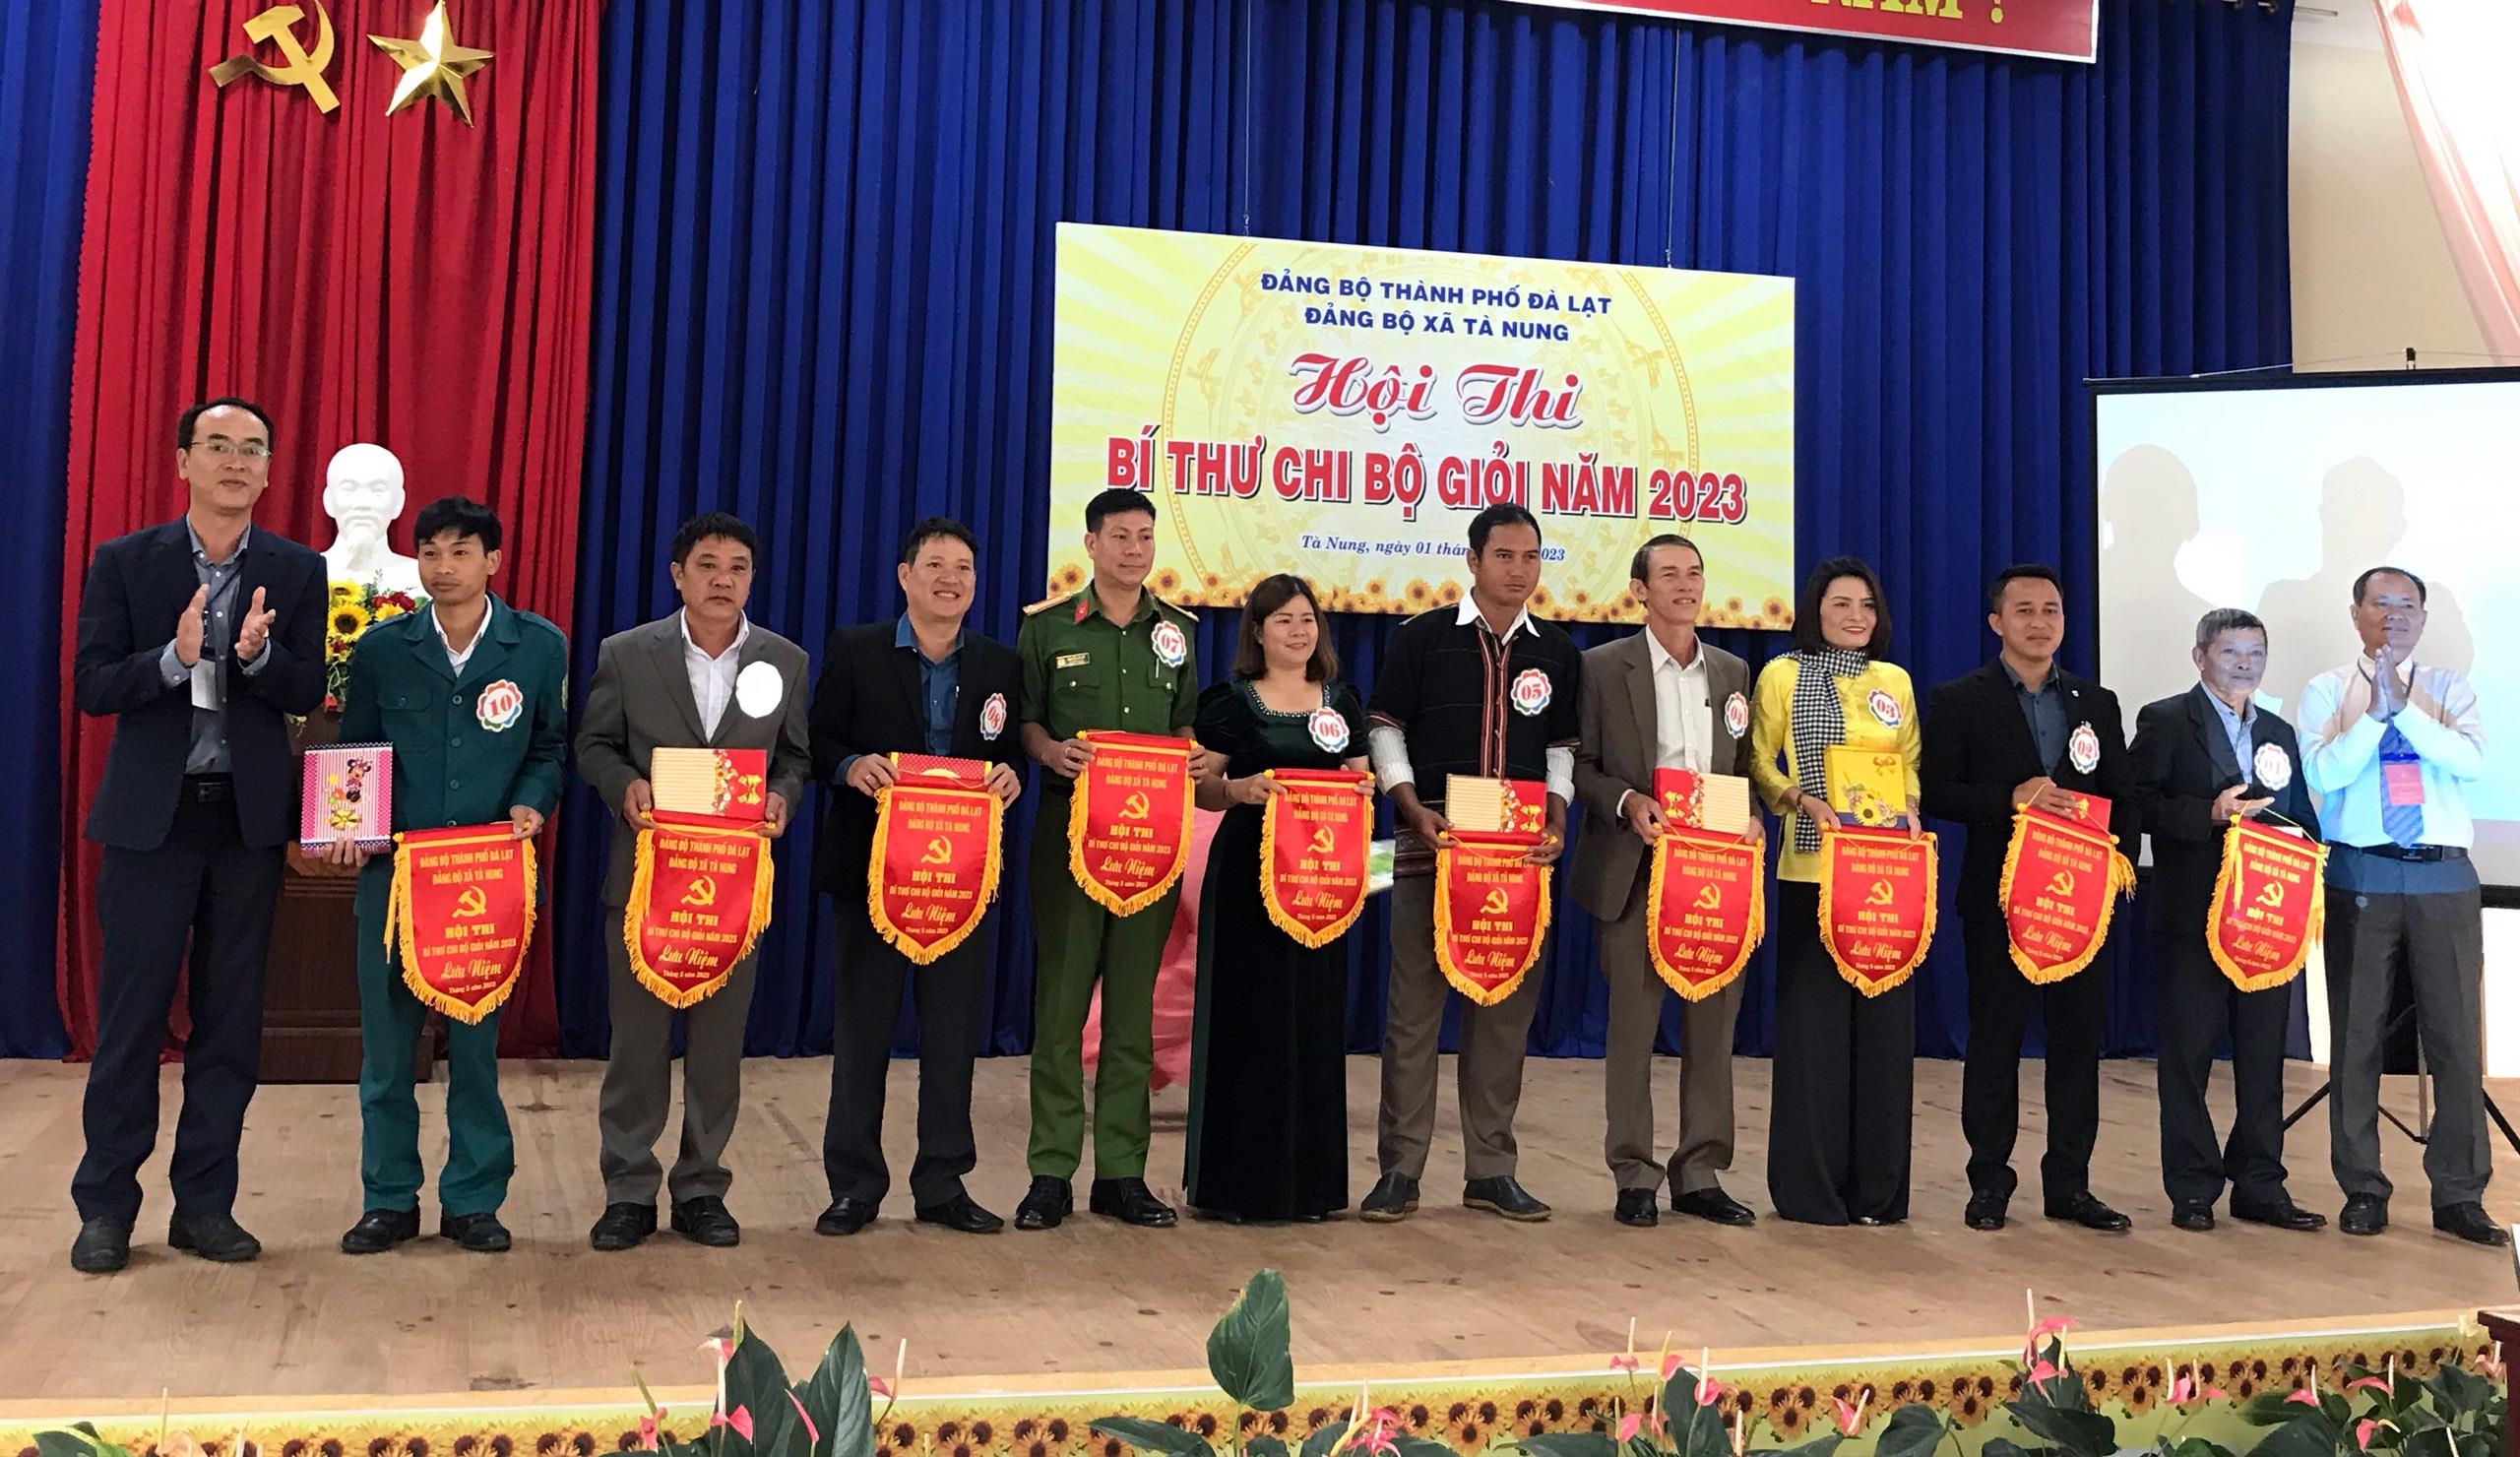 Đảng bộ xã Tà Nung: Đơn vị thứ 3 tổ chức thành công Hội thi Bí thư chi bộ giỏi năm 2023